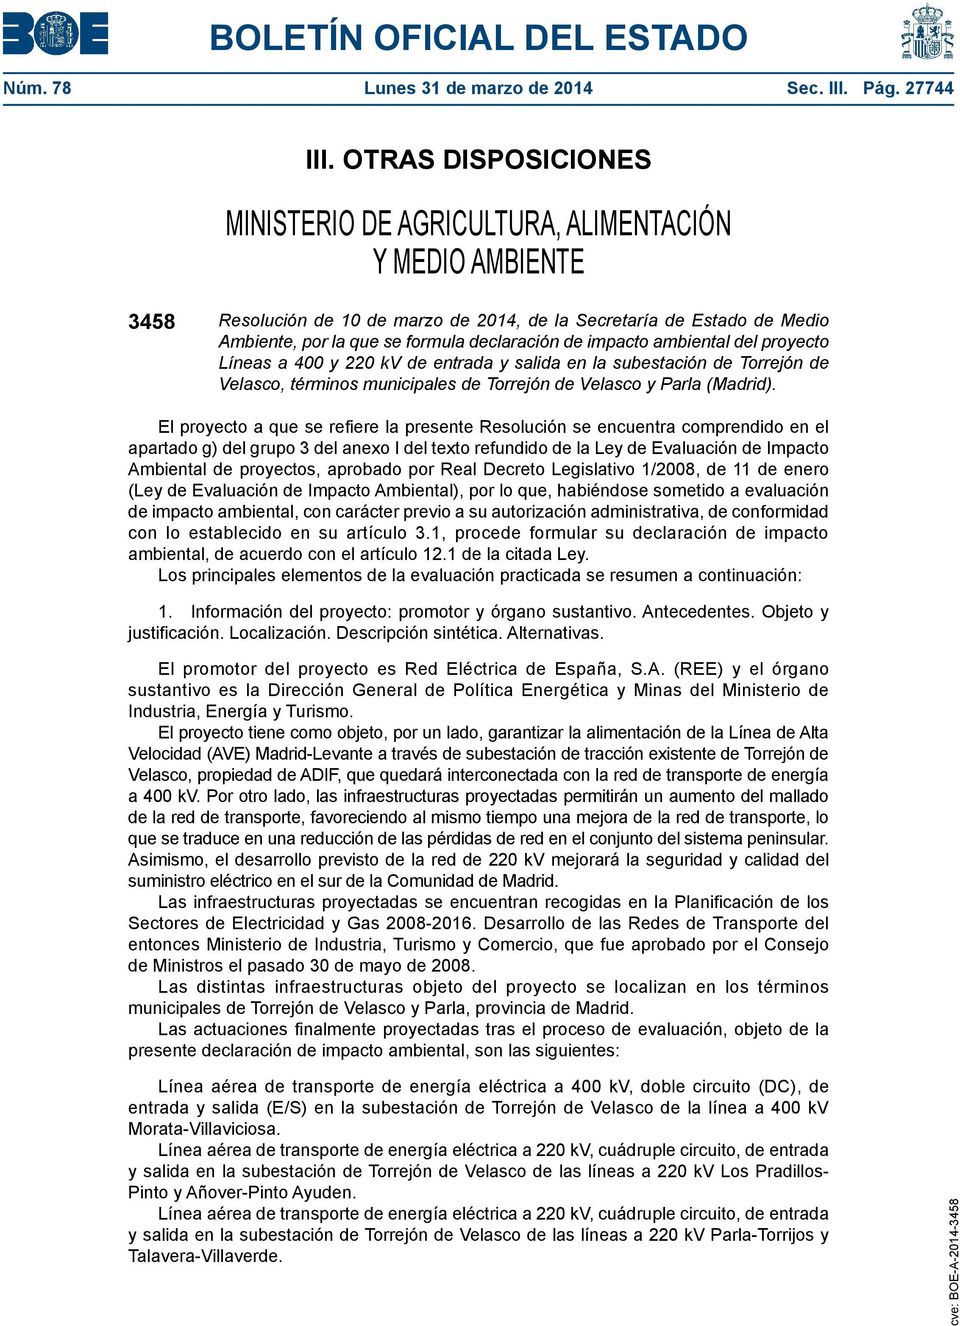 impacto ambiental del proyecto Líneas a 400 y 220 kv de entrada y salida en la subestación de Torrejón de Velasco, términos municipales de Torrejón de Velasco y Parla (Madrid).